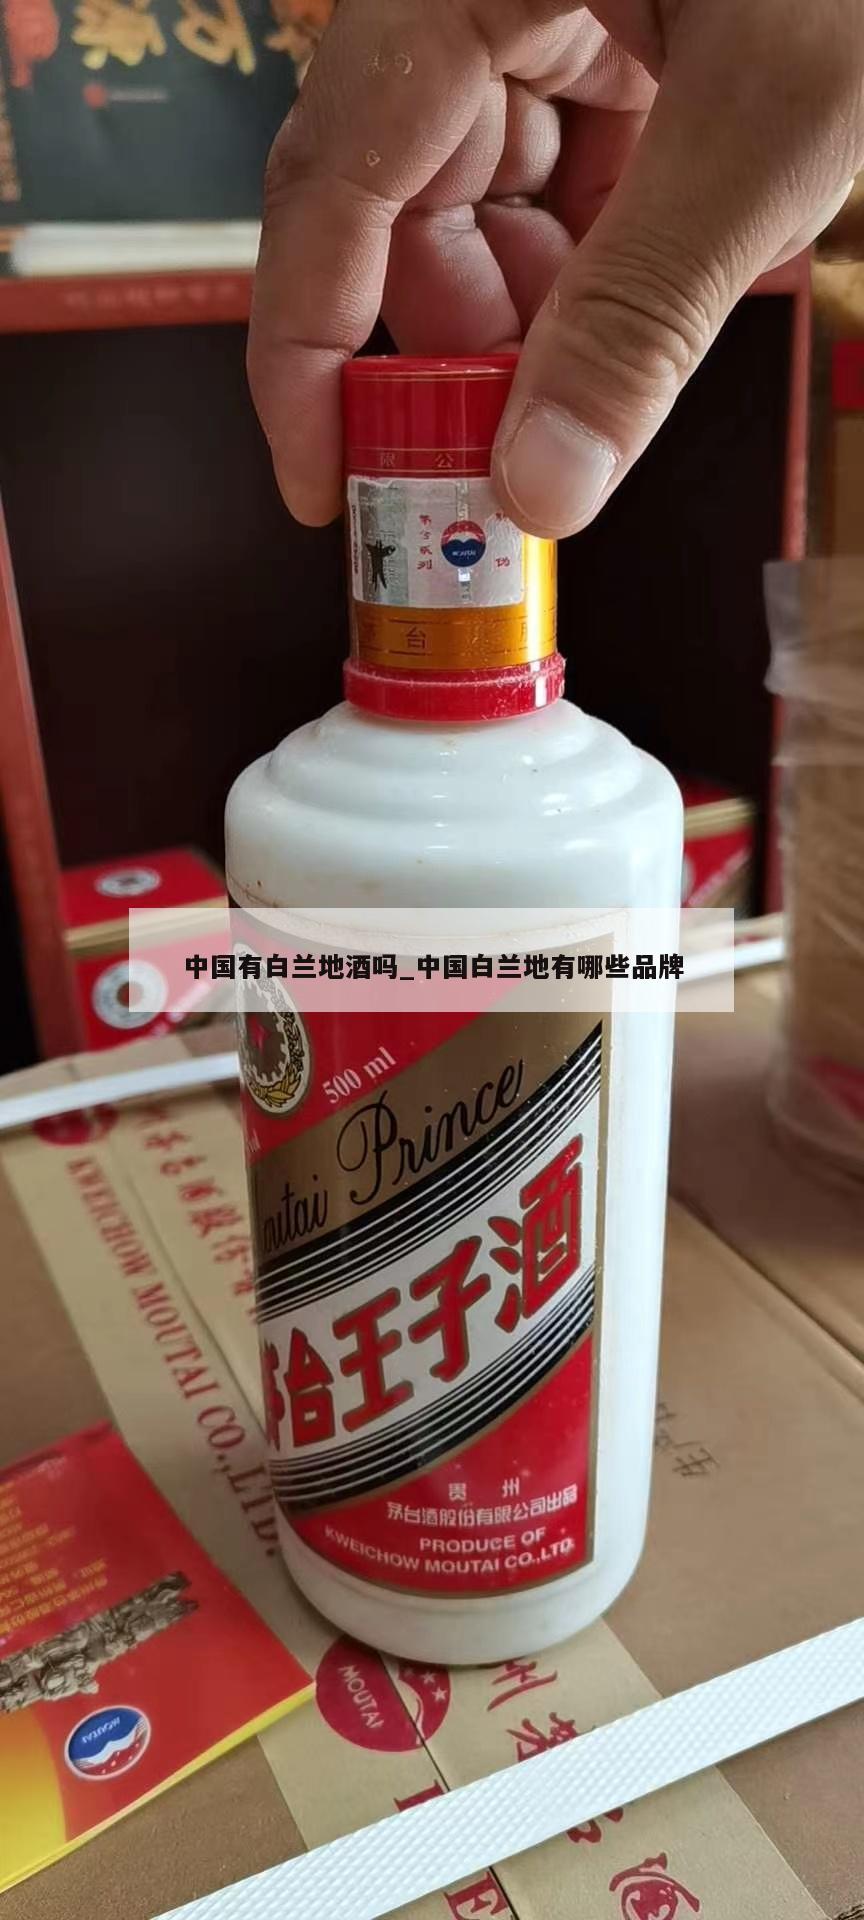 中国有白兰地酒吗_中国白兰地有哪些品牌